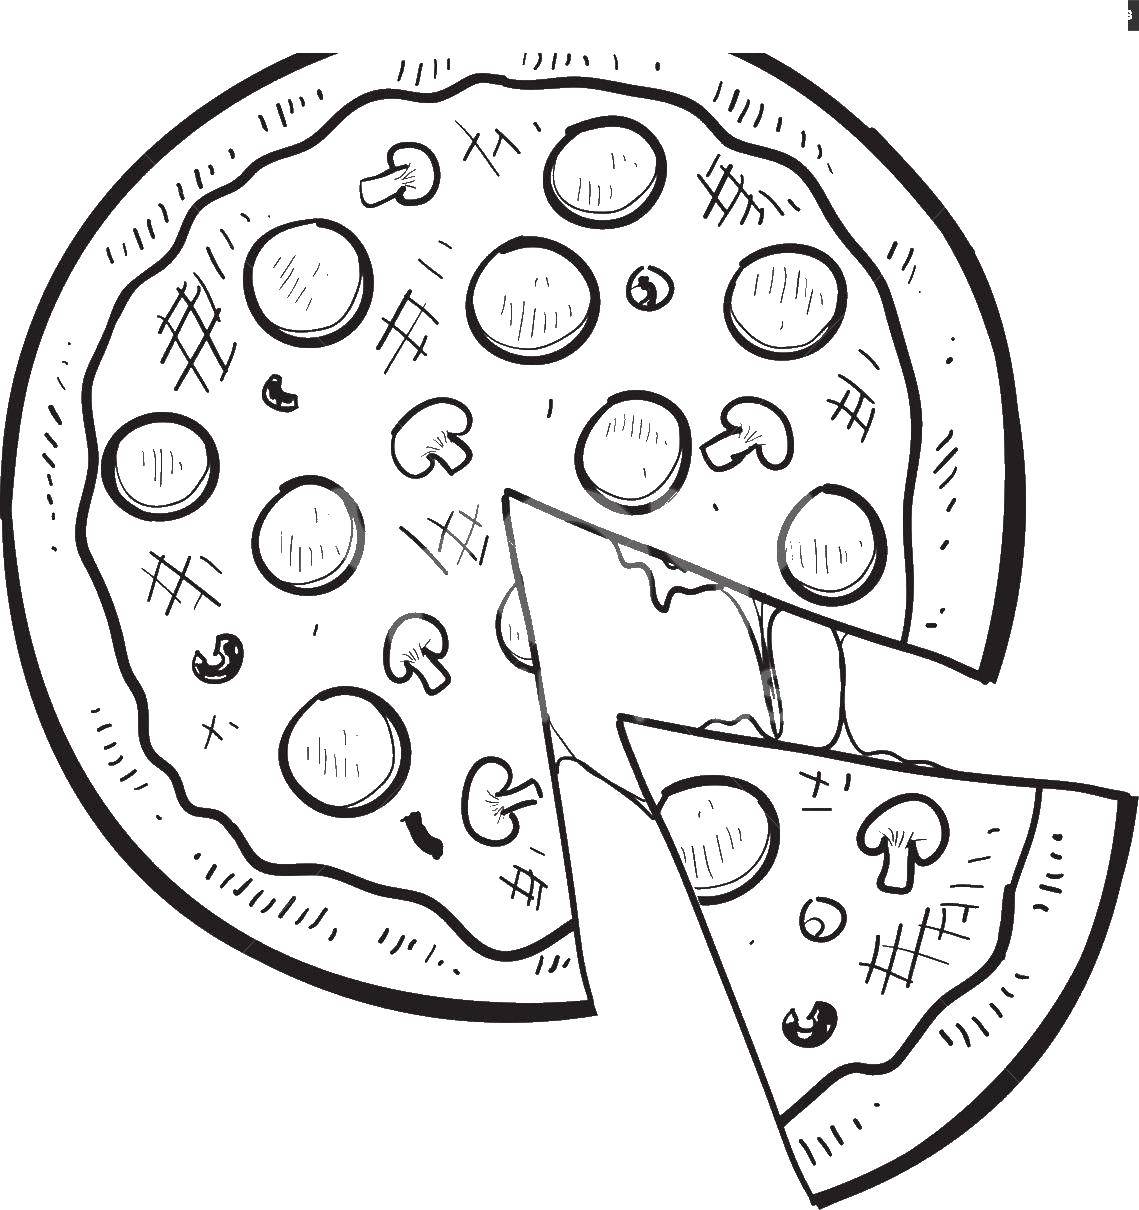 Опис: розмальовки  Грибна піца. Категорія: Їжа. Теги:  піца, їжа.